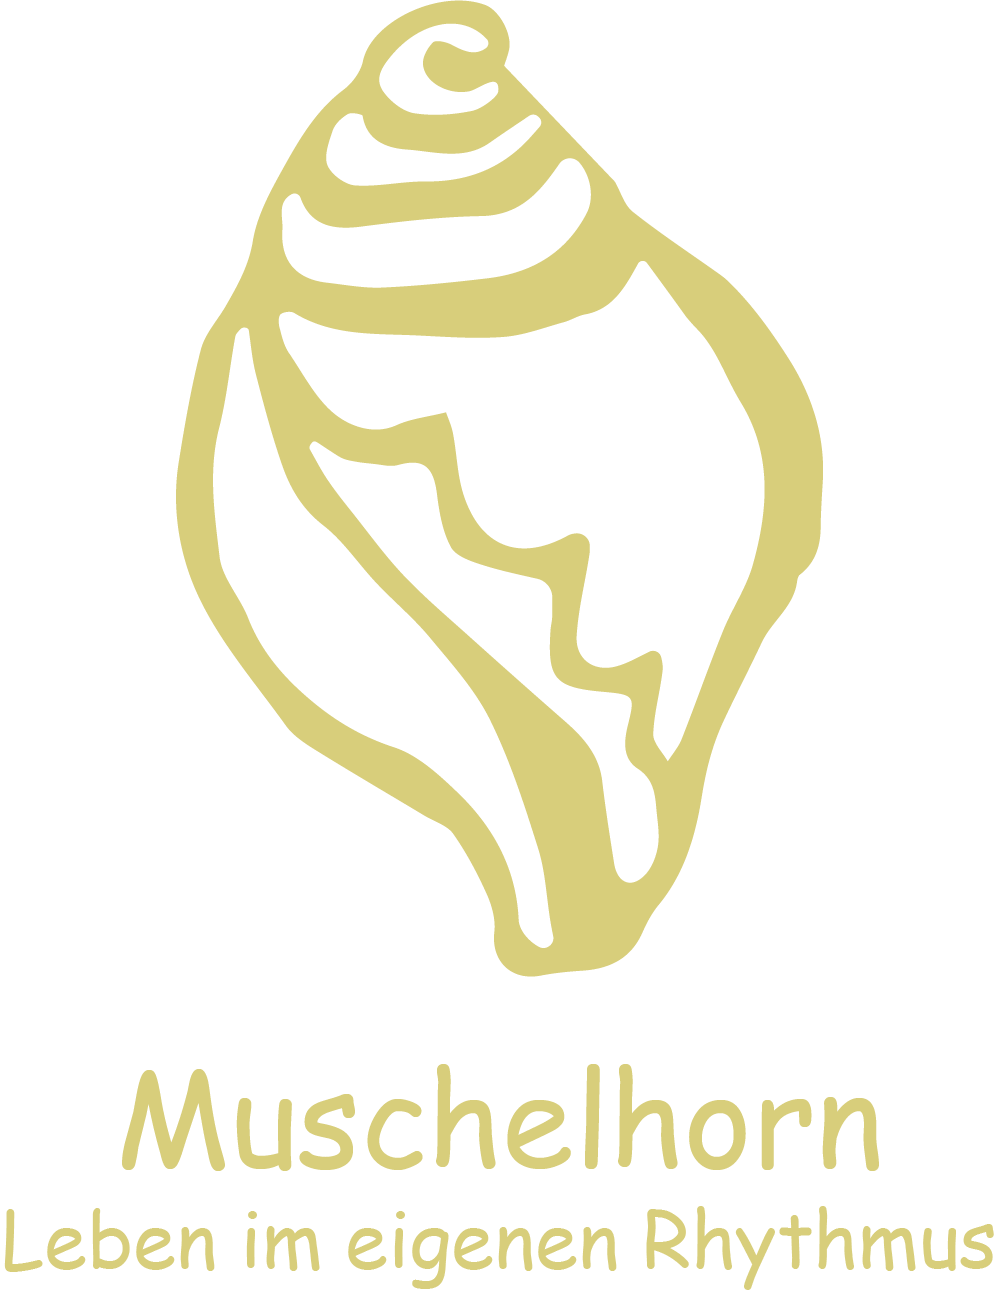 das Muschelhorn